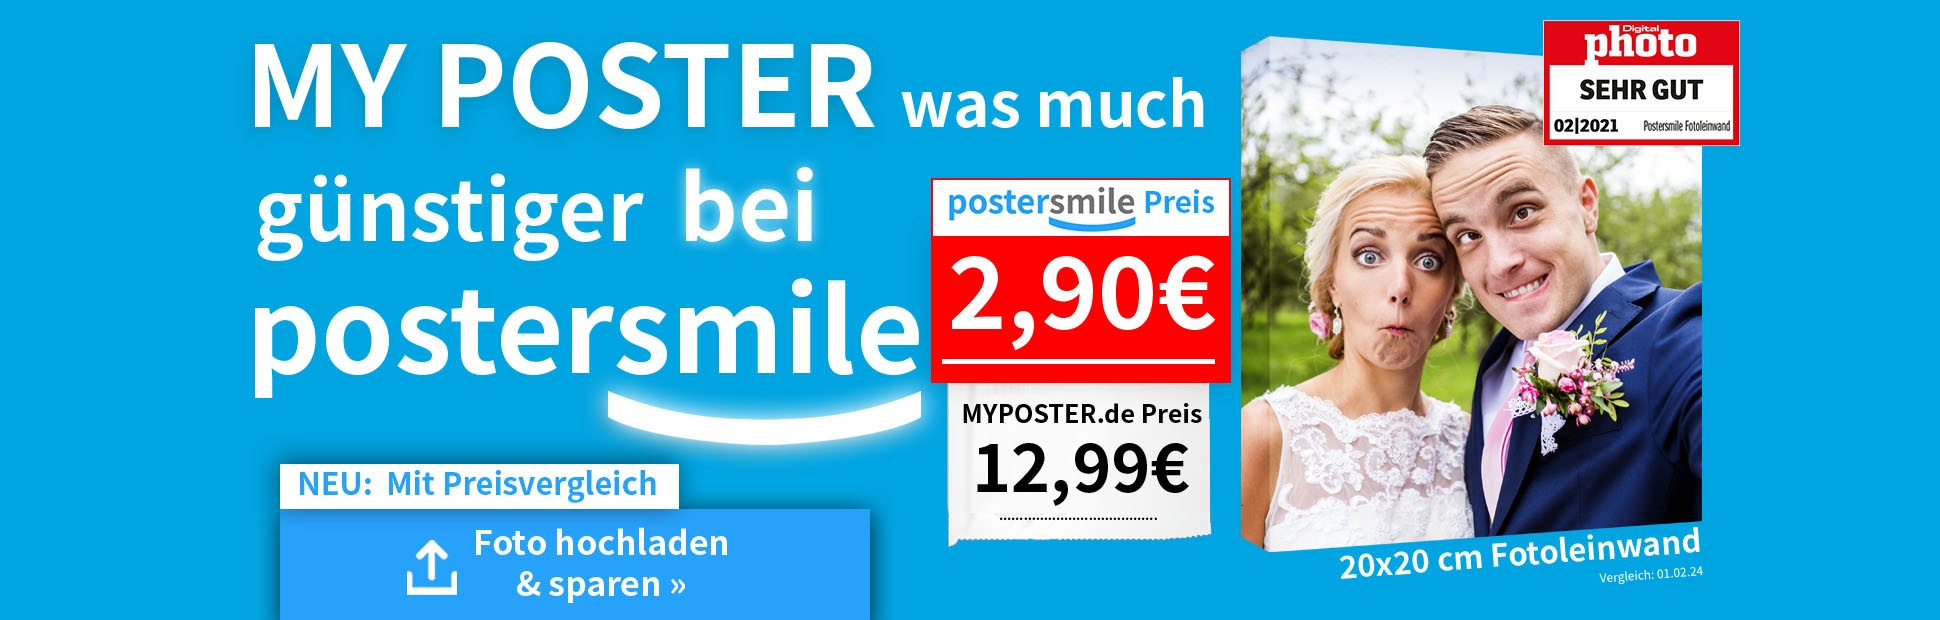 Fotoleinwand günstig - Foto auf Leinwand Preisvergleich postersmile.de vs. myposter.de